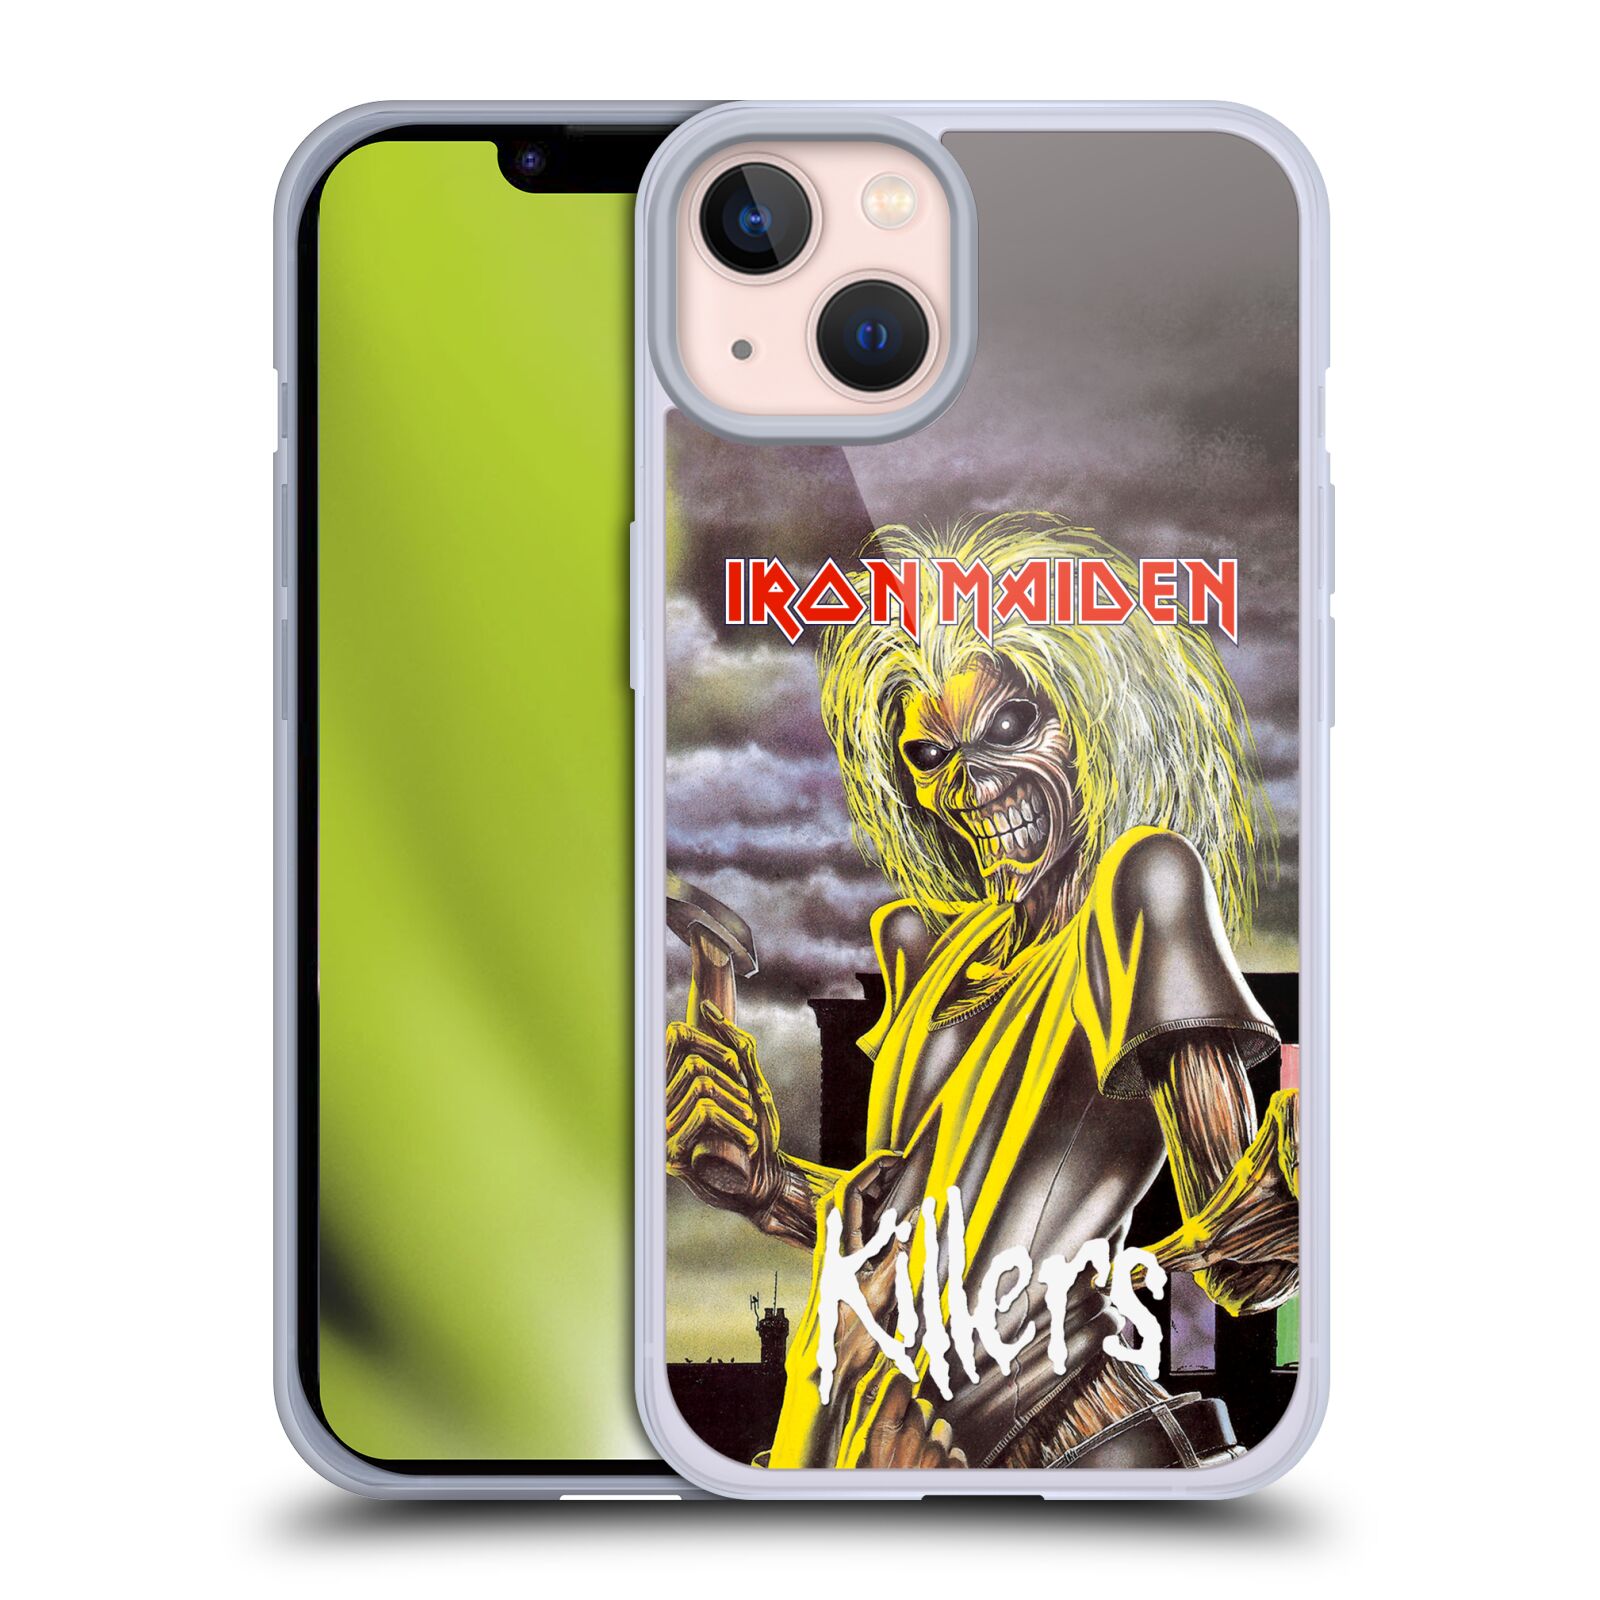 Silikonové pouzdro na mobil Apple iPhone 13 - Head Case - Iron Maiden - Killers (Silikonový kryt, obal, pouzdro na mobilní telefon Apple iPhone 13 s motivem Iron Maiden - Killers)